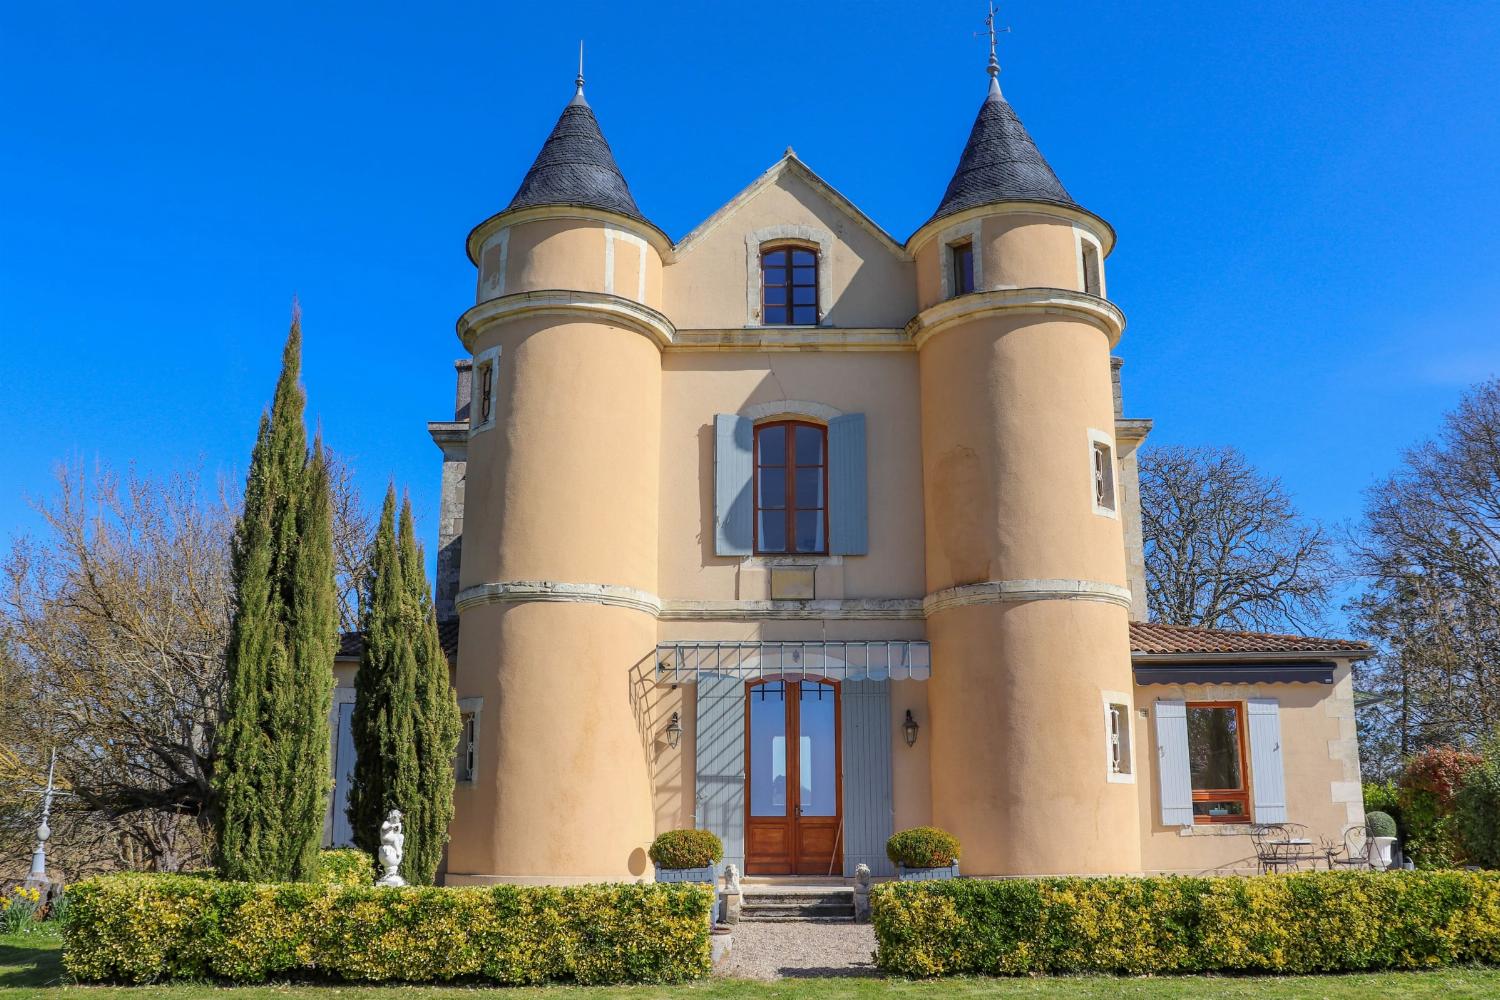 Château de vacances en Lot-et-Garonne